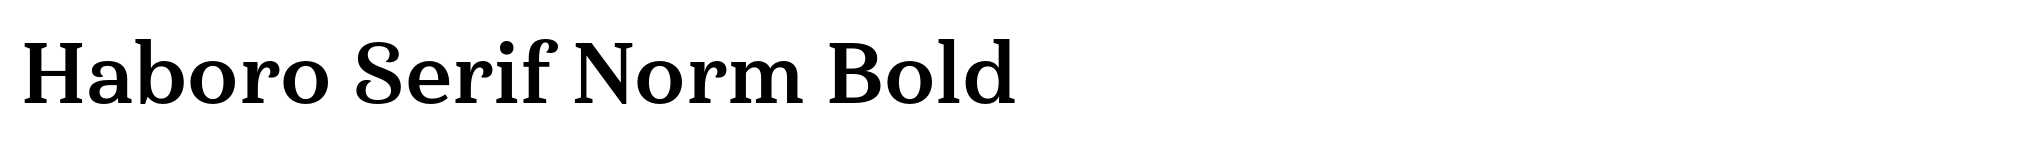 Haboro Serif Norm Bold image